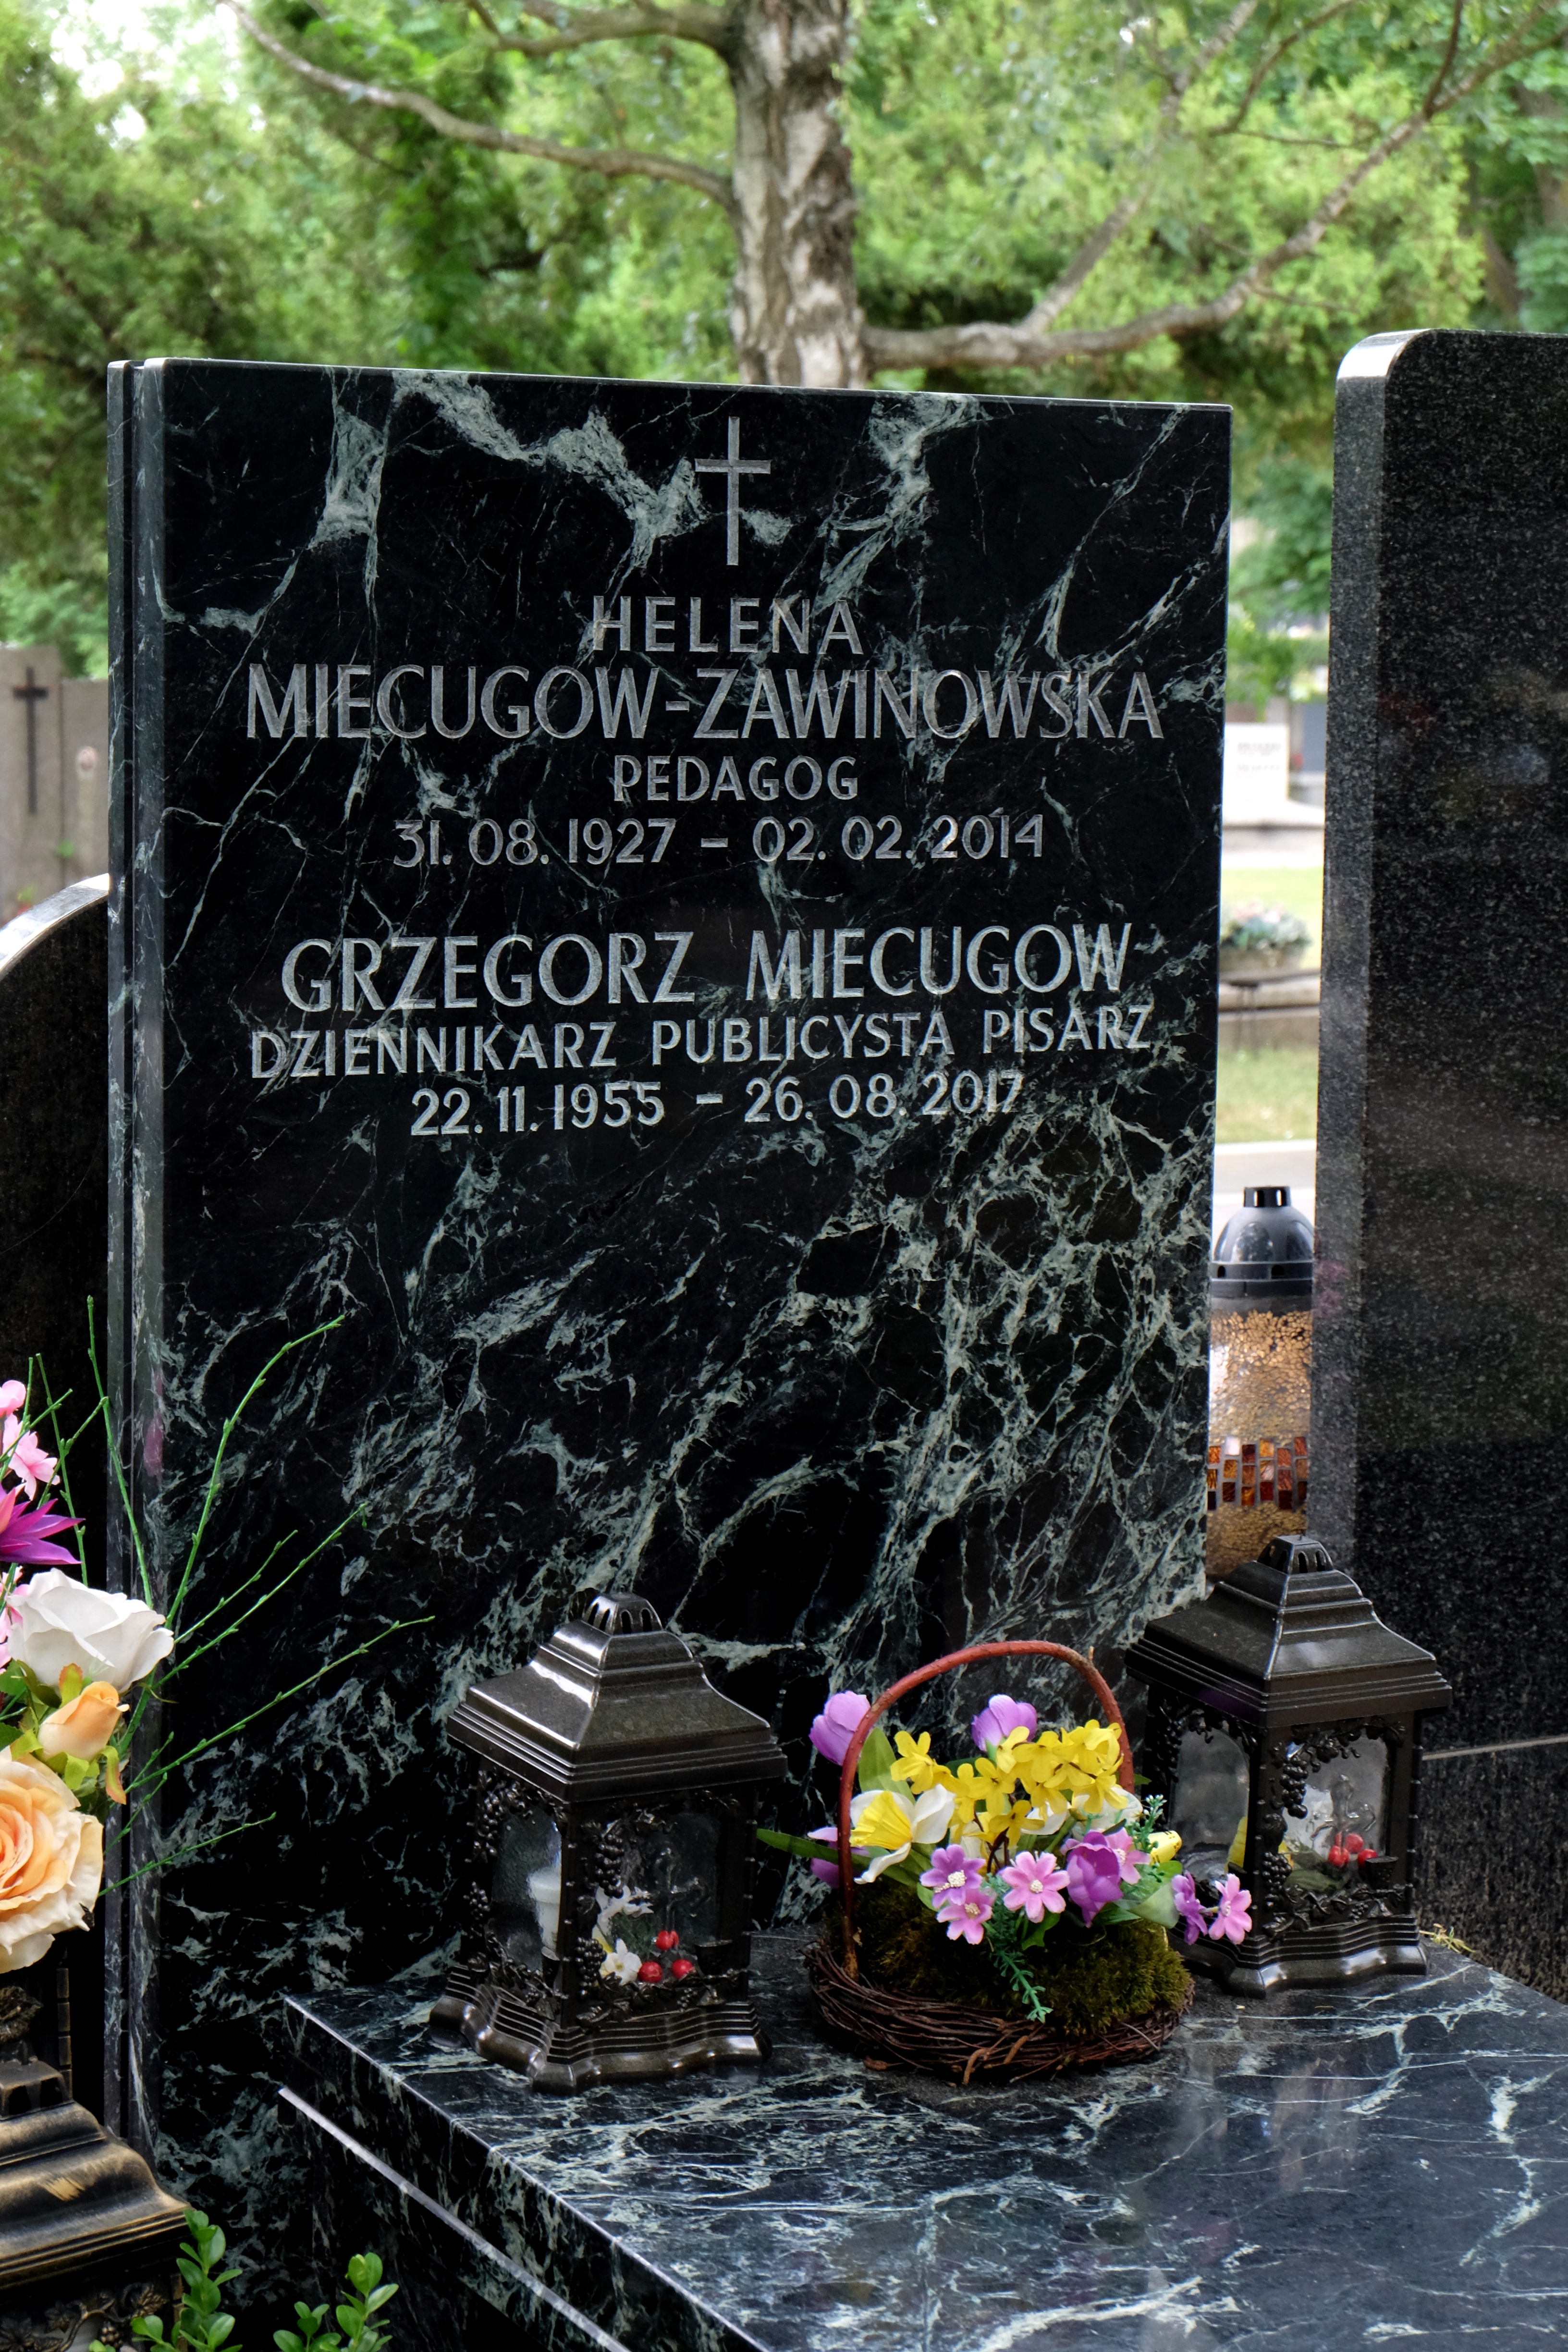 Wikipedia, Grzegorz Miecugow, Self-published work, Warsaw Military Cemetery - M